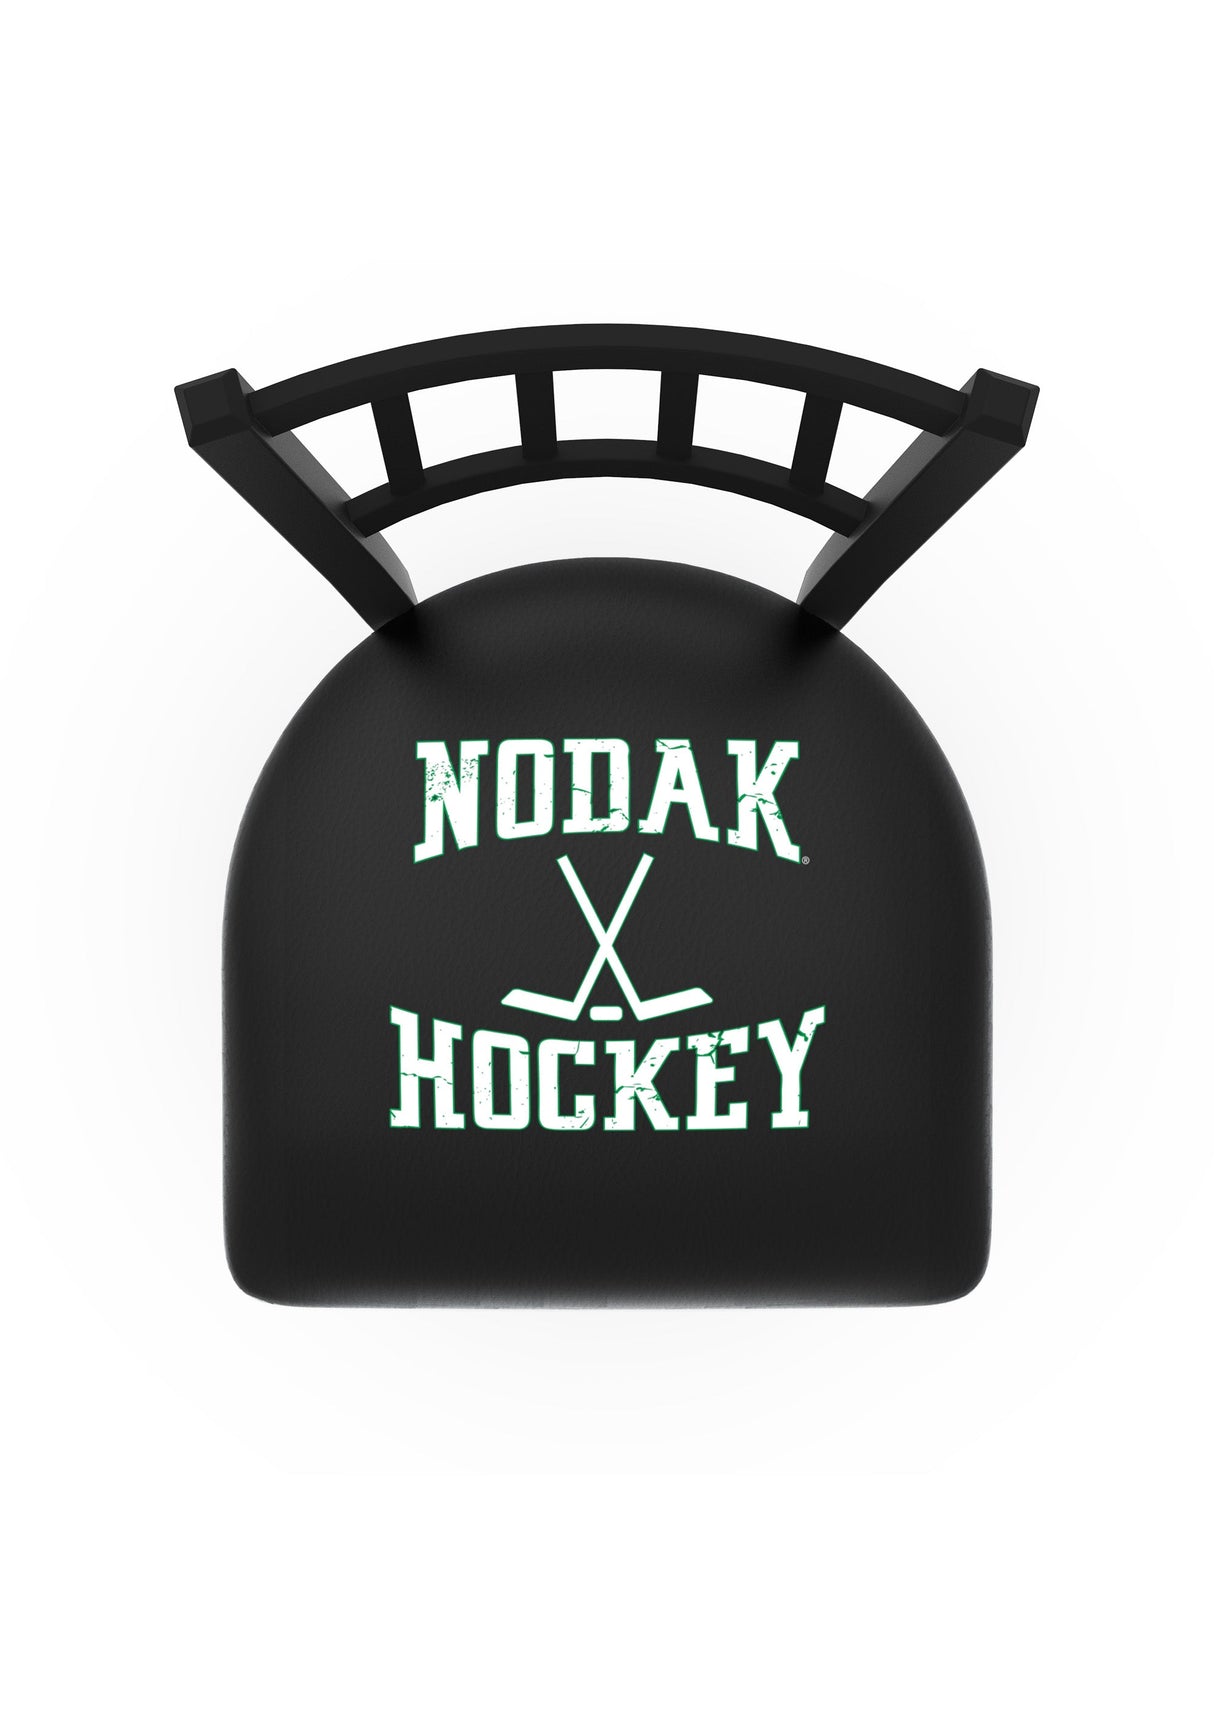 University of North Dakota Nodak Hockey L018 Bar Stool | NCAA University of North Dakota Hockey Bar Stool